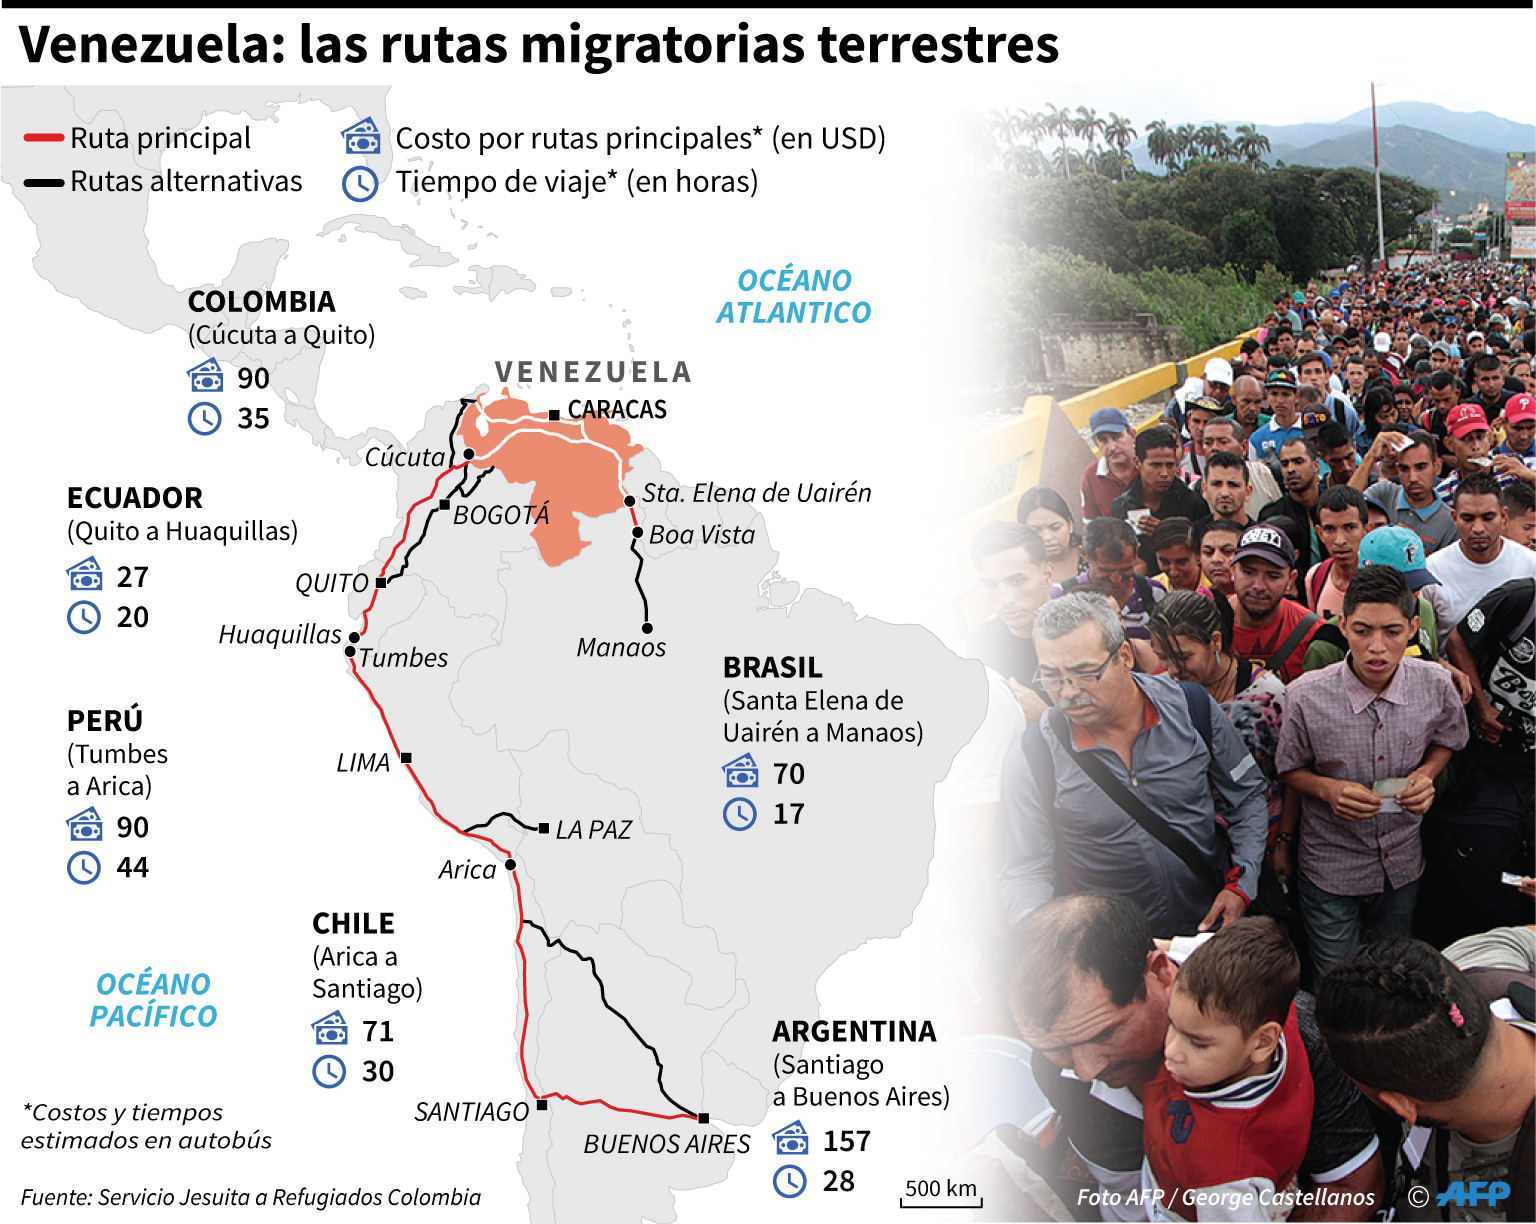 Las rutas y las políticas migratorias para venezolanos en el mundo (infografías)